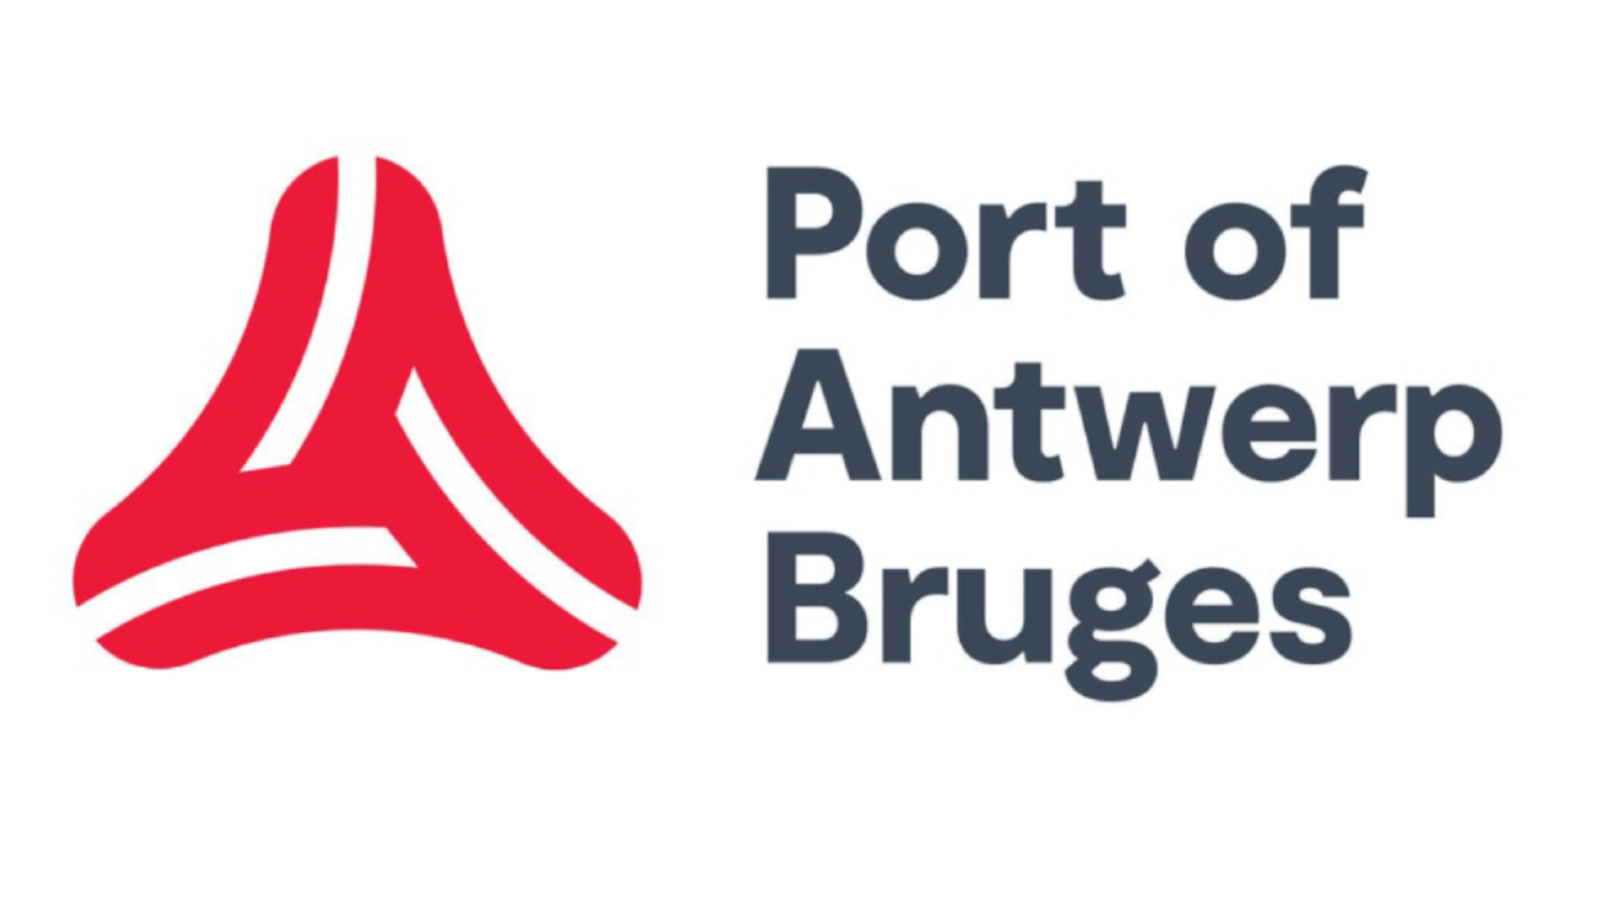 Port of Antwerp Bruges logo.png